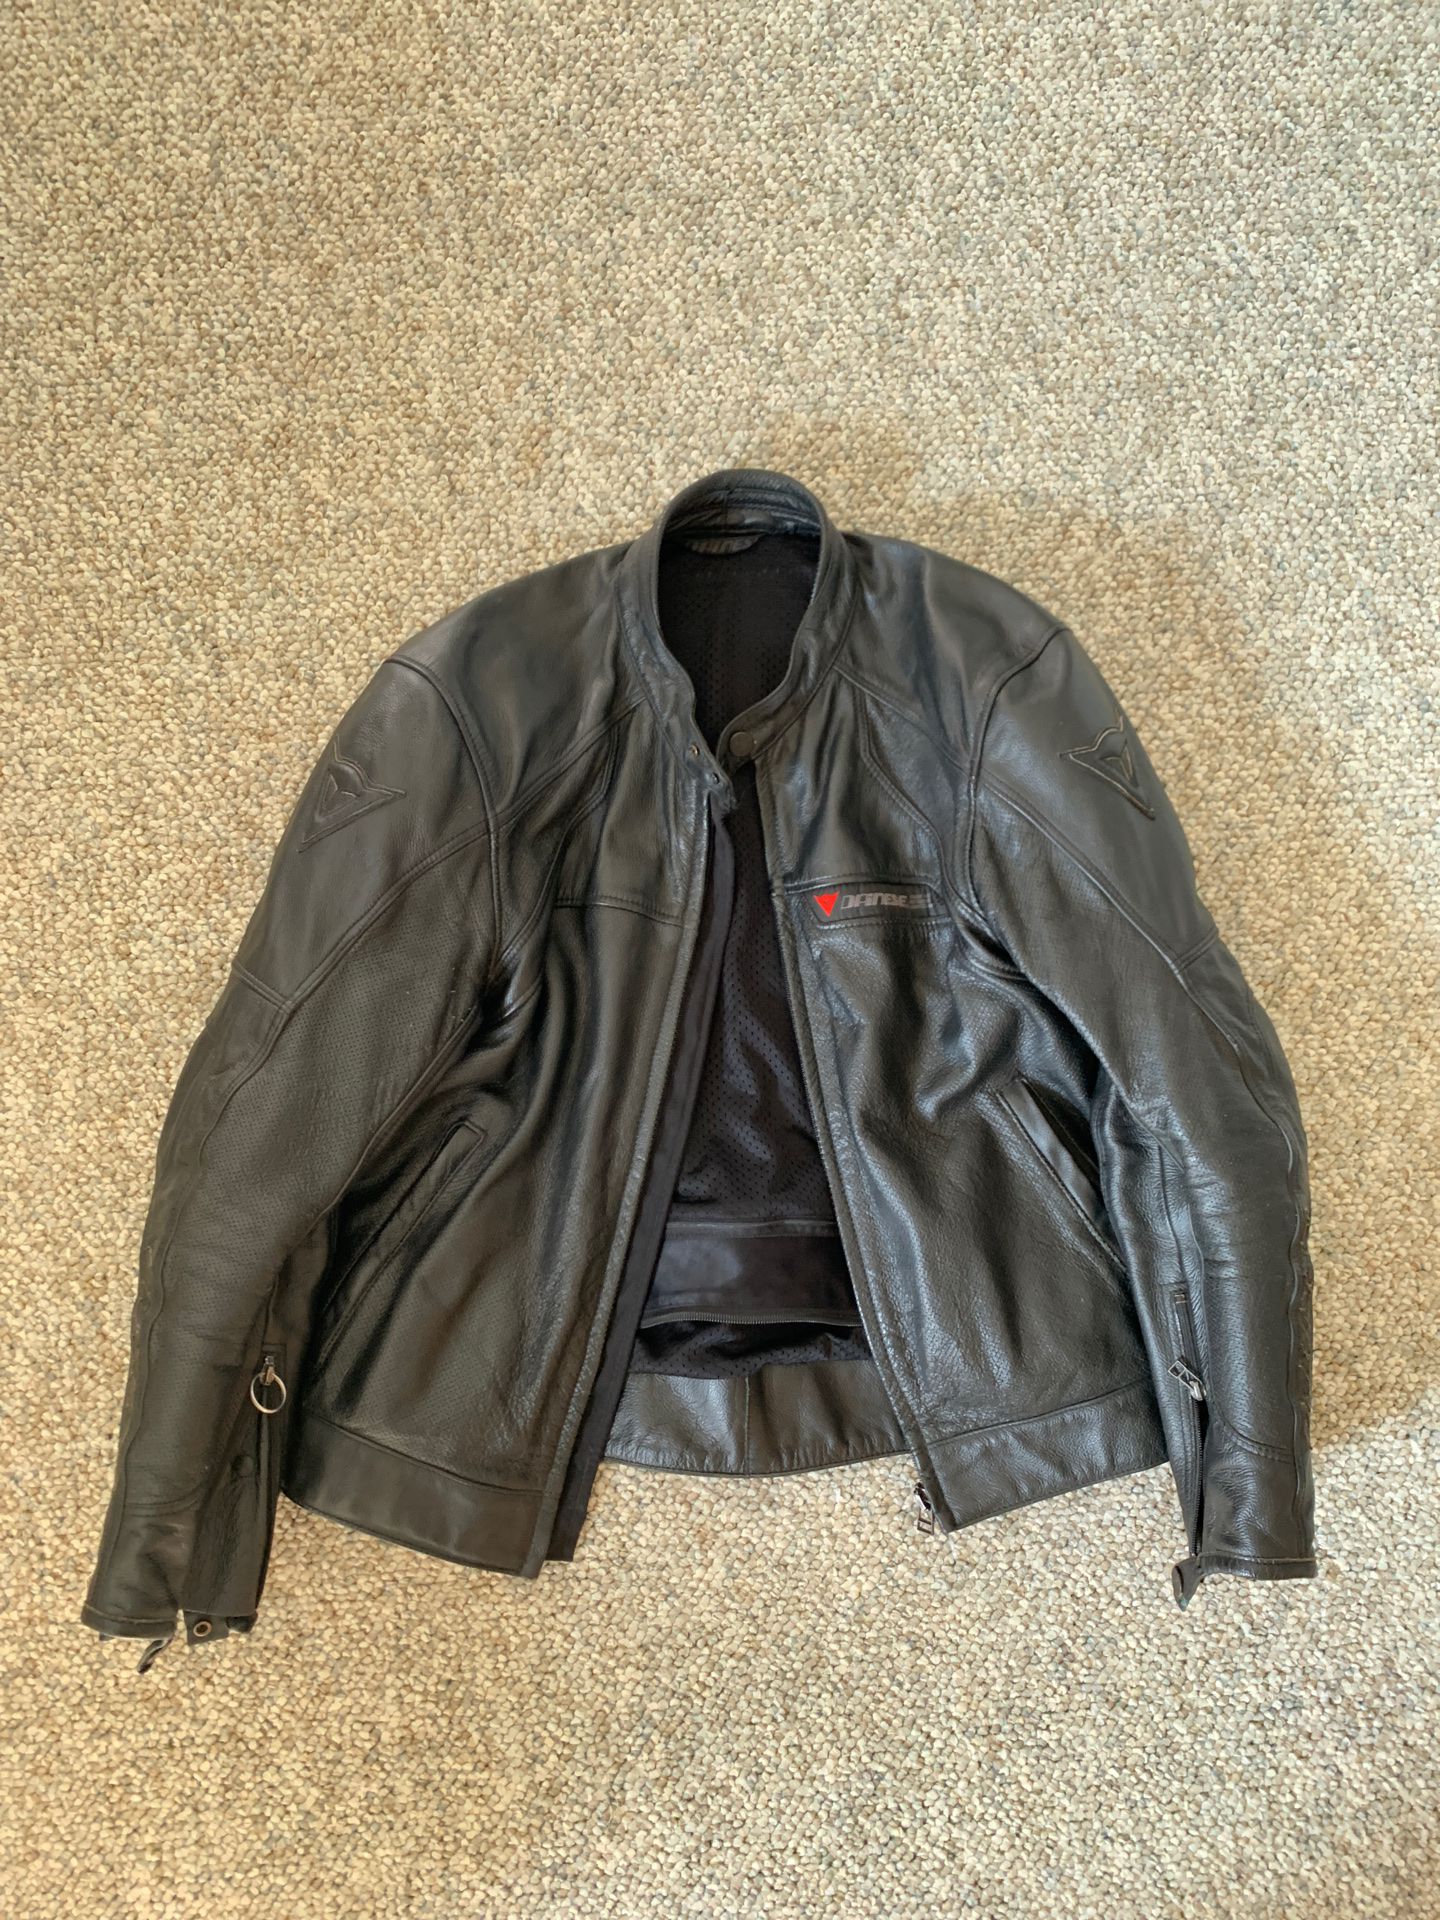 Dainese motorcycle jacket